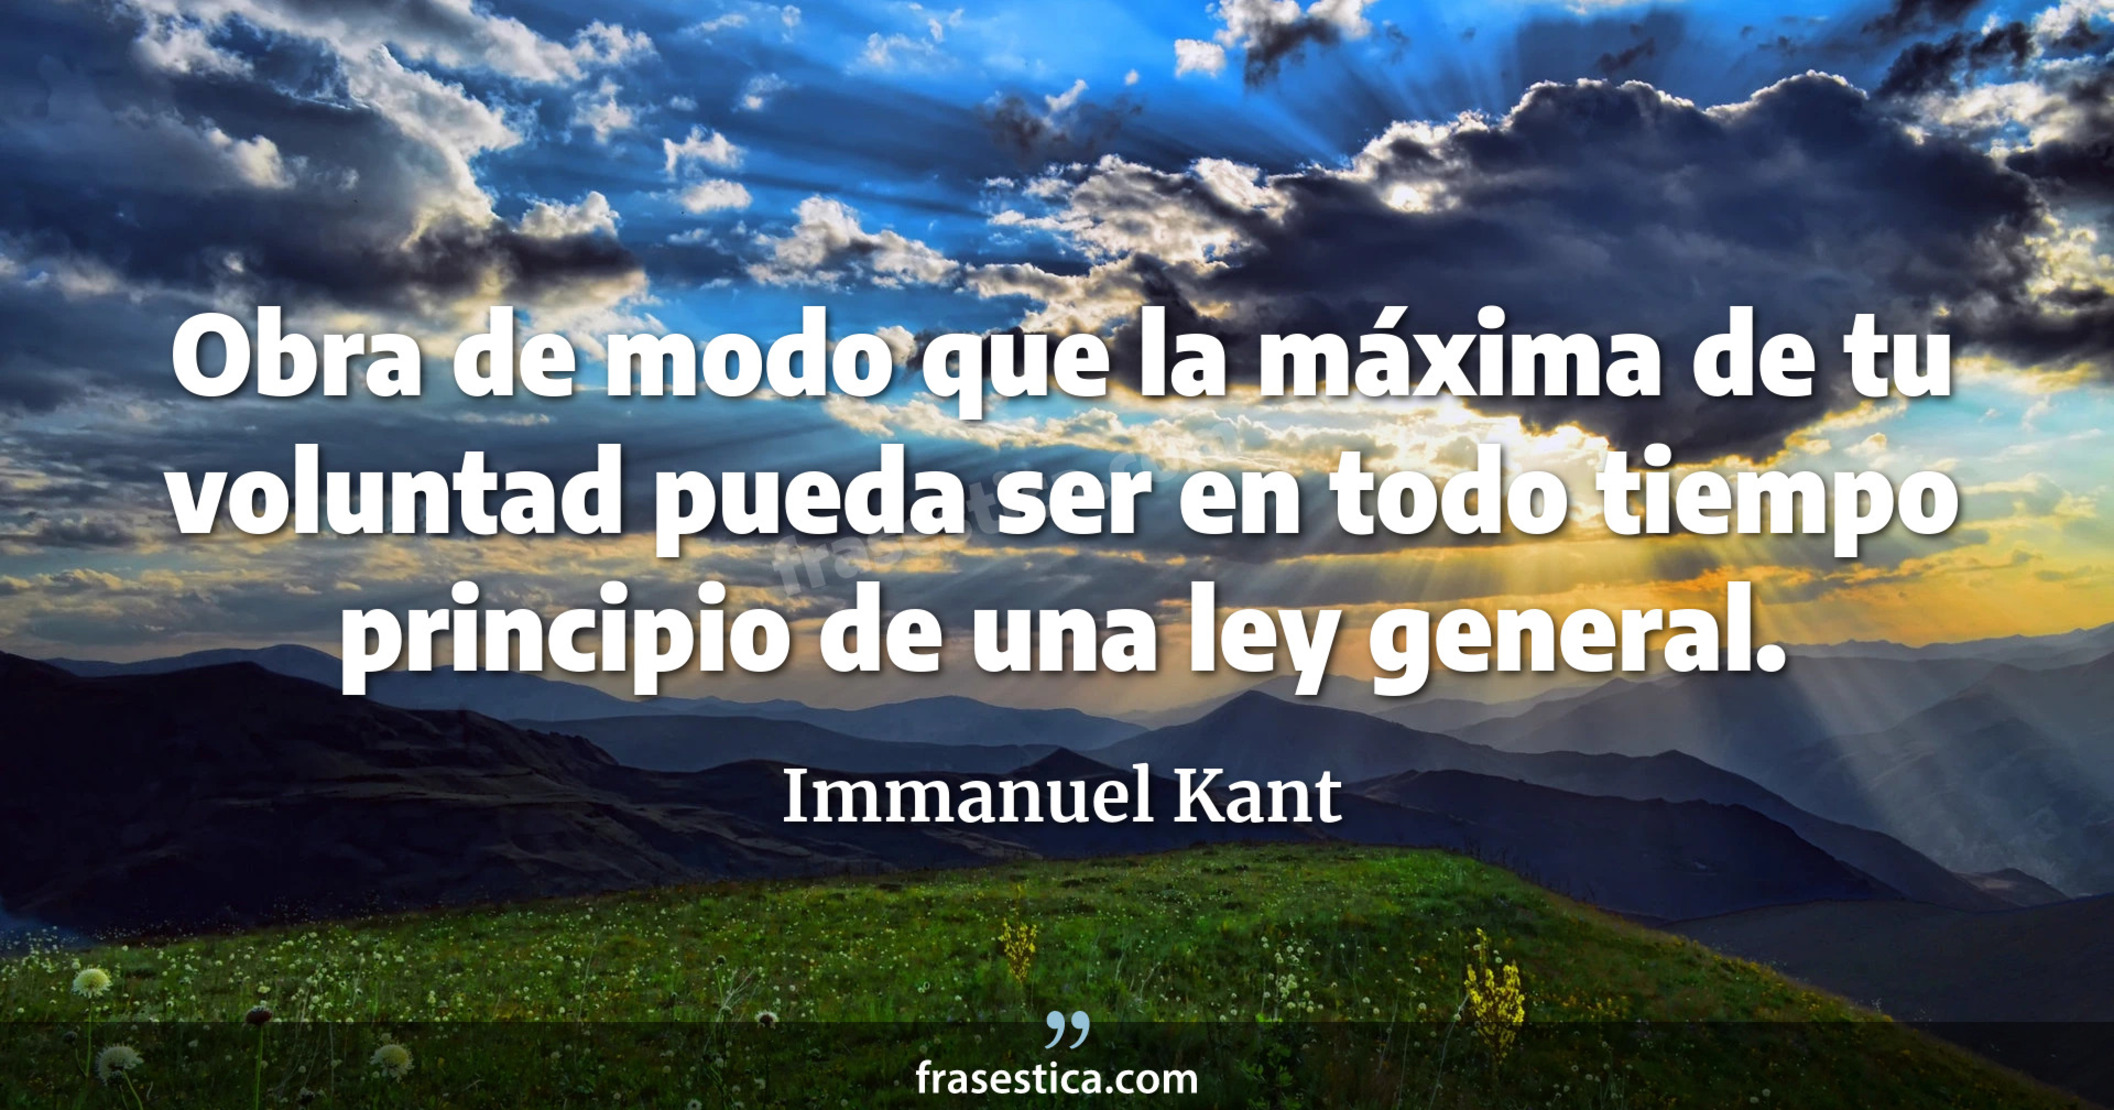 Obra de modo que la máxima de tu voluntad pueda ser en todo tiempo principio de una ley general. - Immanuel Kant